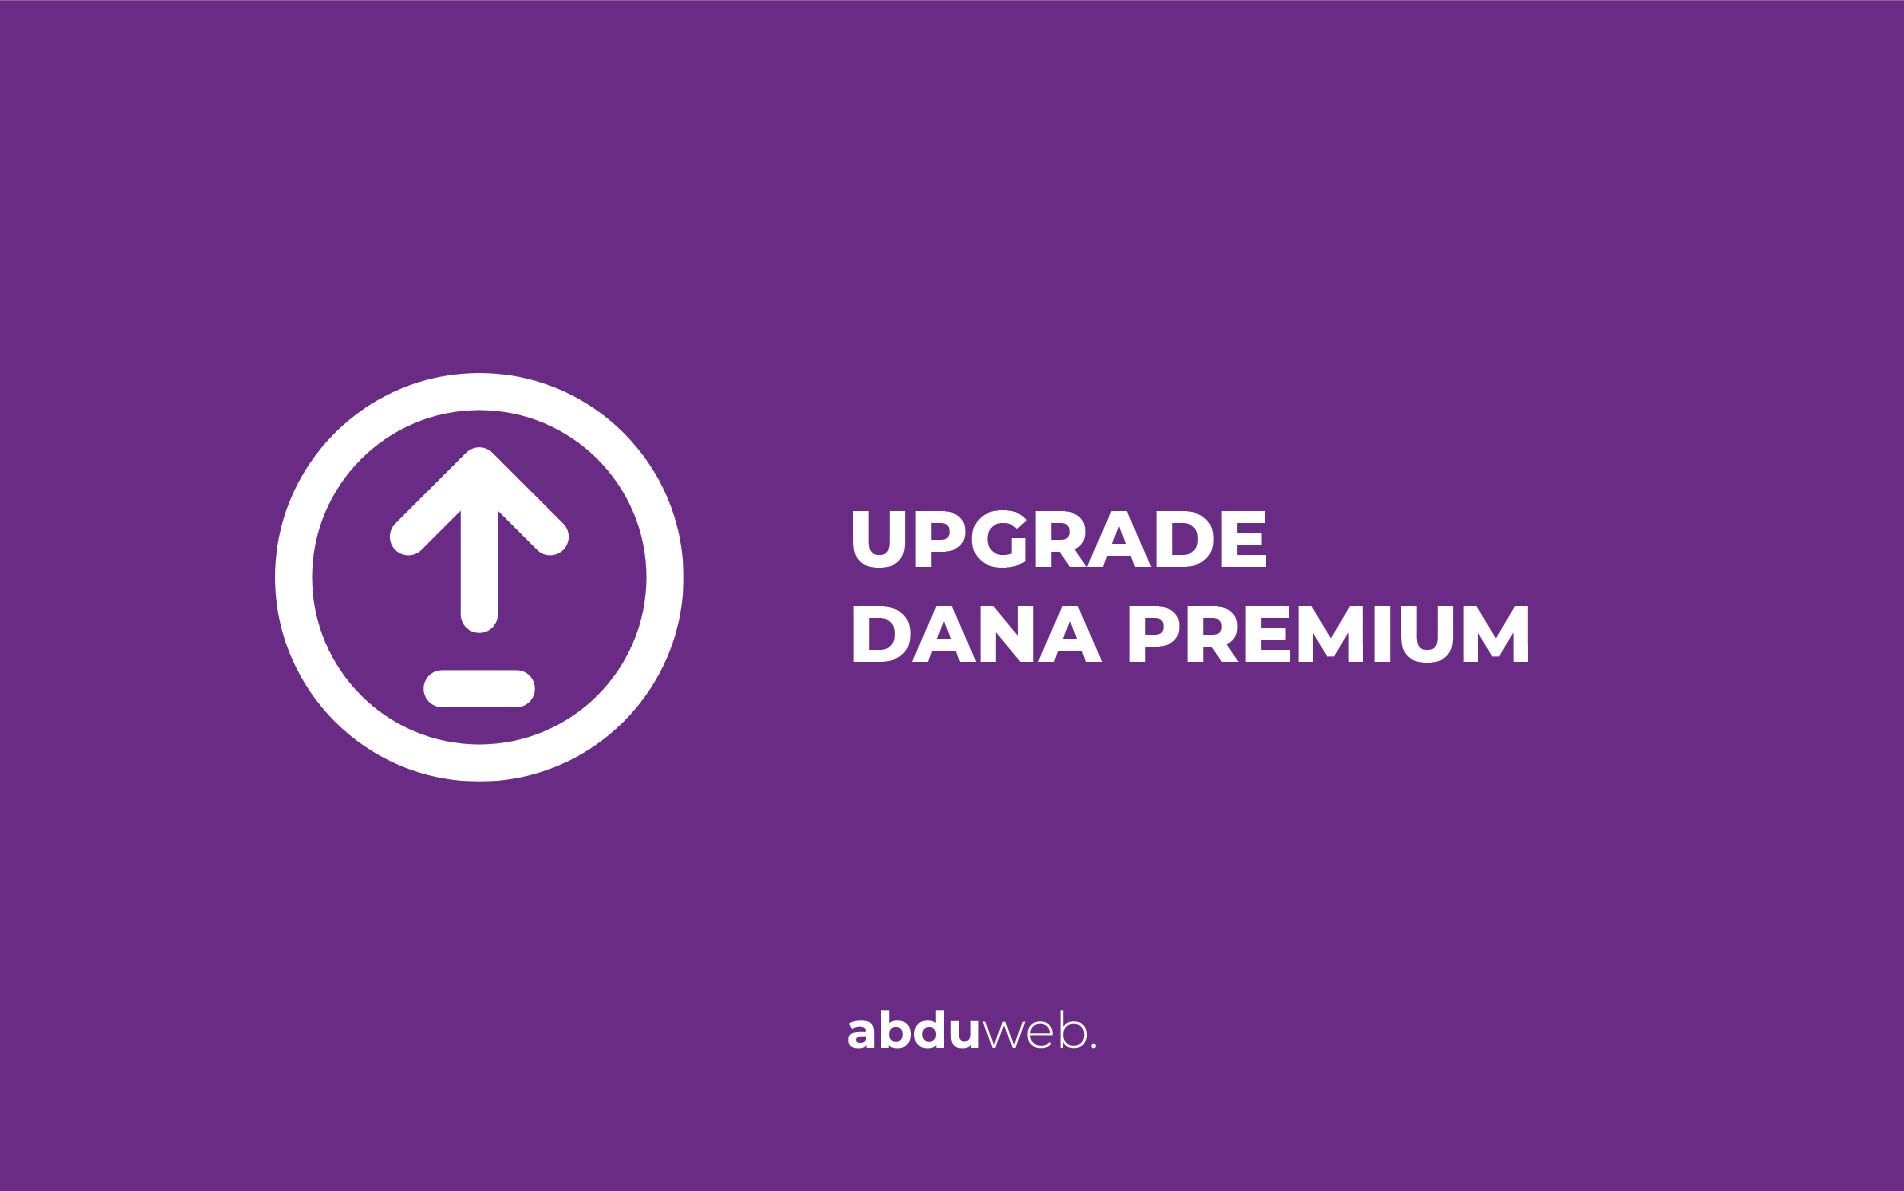 Upgrade Dana Premium Tanpa Ktp. Cara Upgrade Dana Premium Tanpa Ktp, Dijamin Work 100% Update 2021